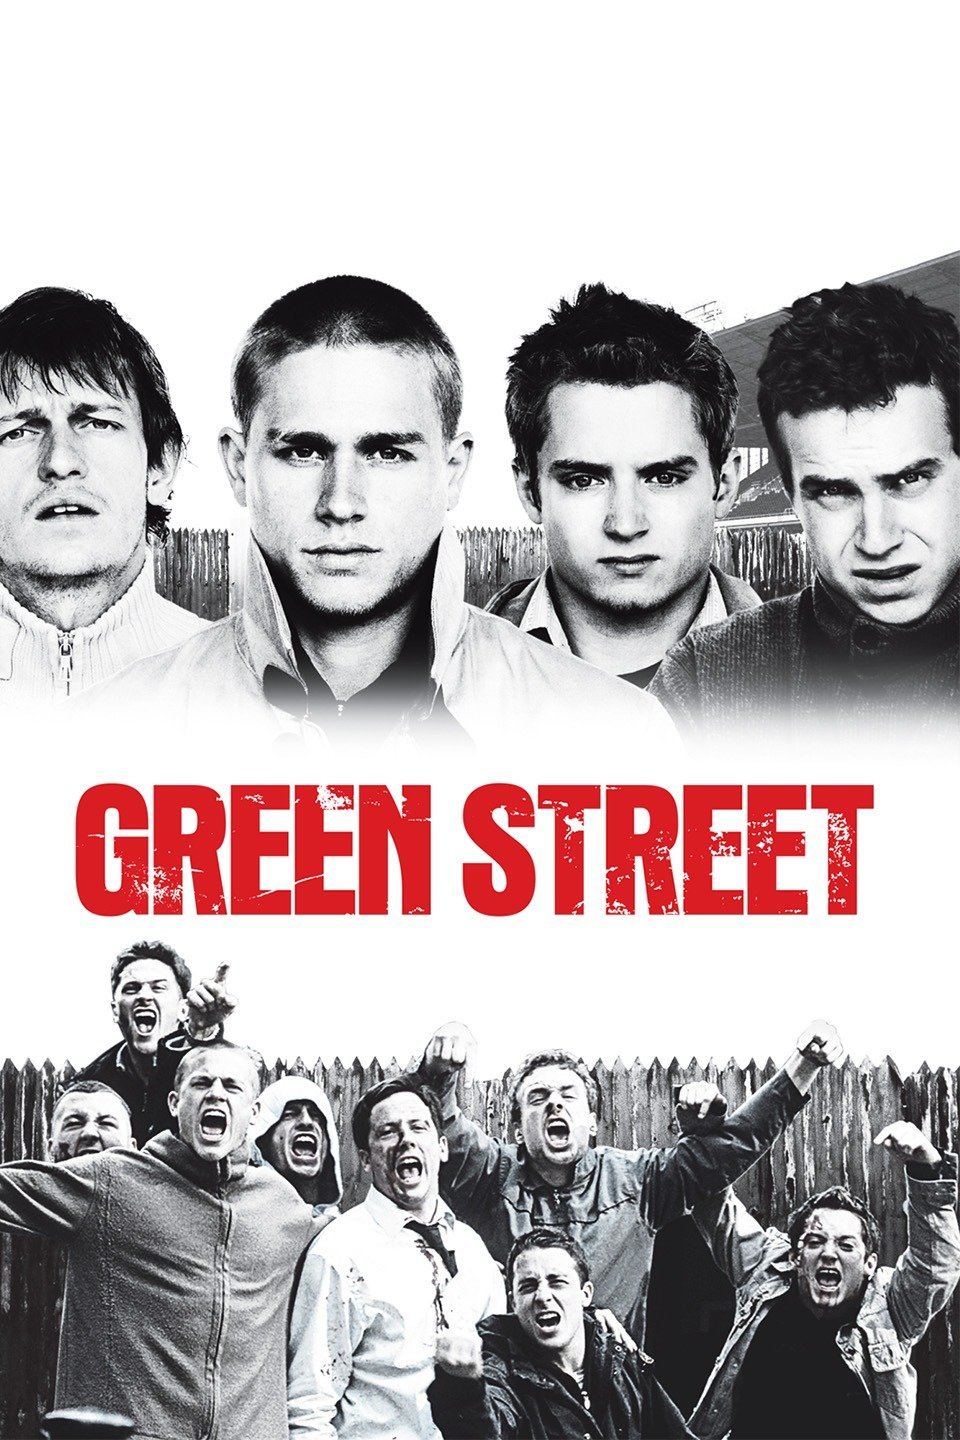 Green Street Hooligans Movie Poster